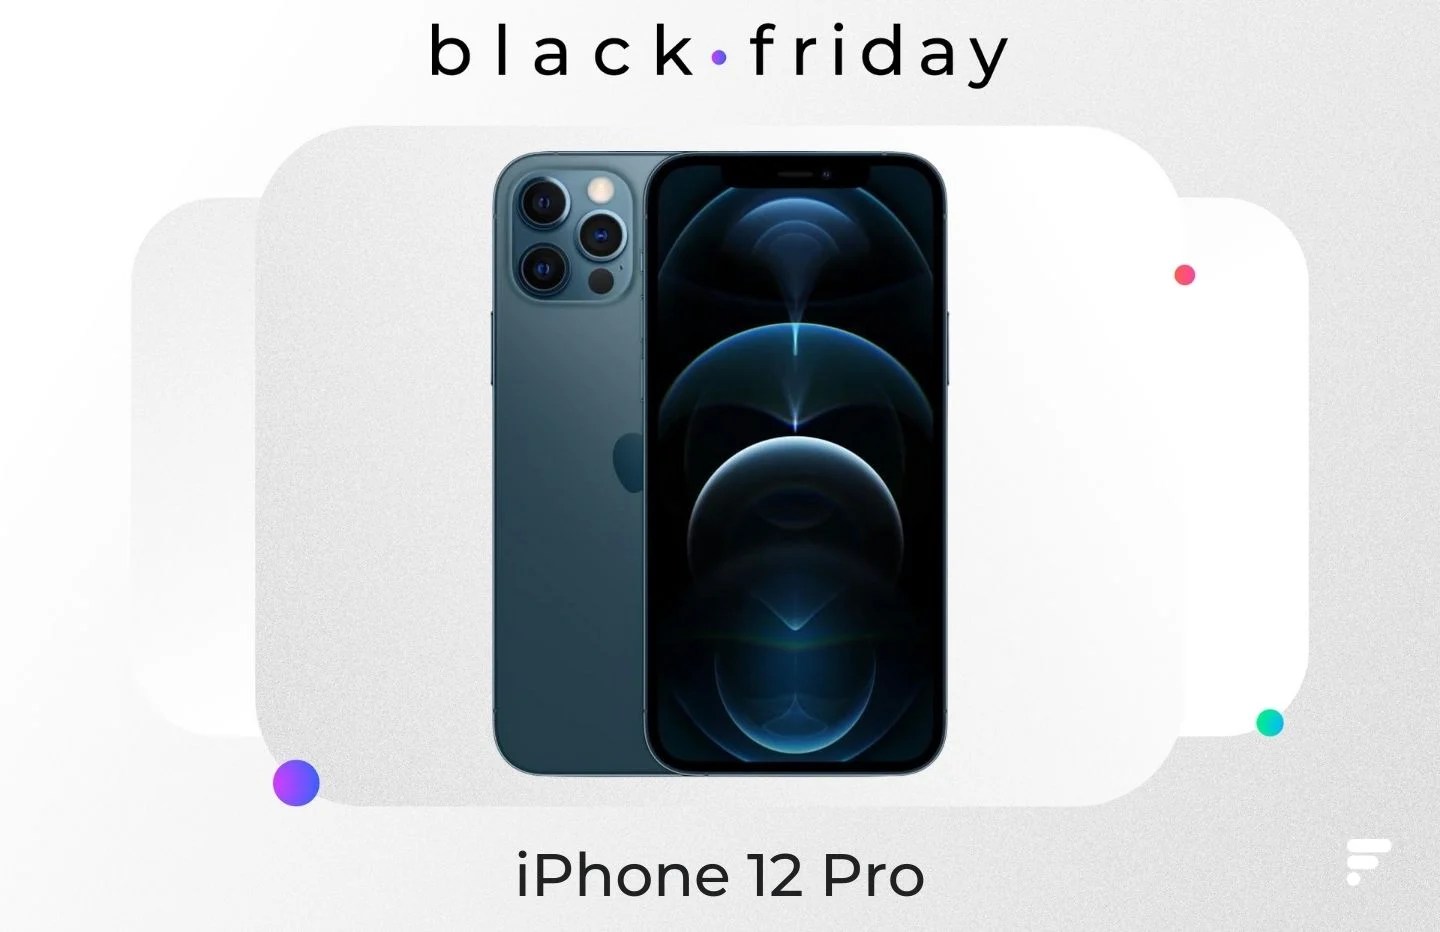 Le prix de l’iPhone 12 Pro n’a jamais été aussi bas que pendant le Black Friday